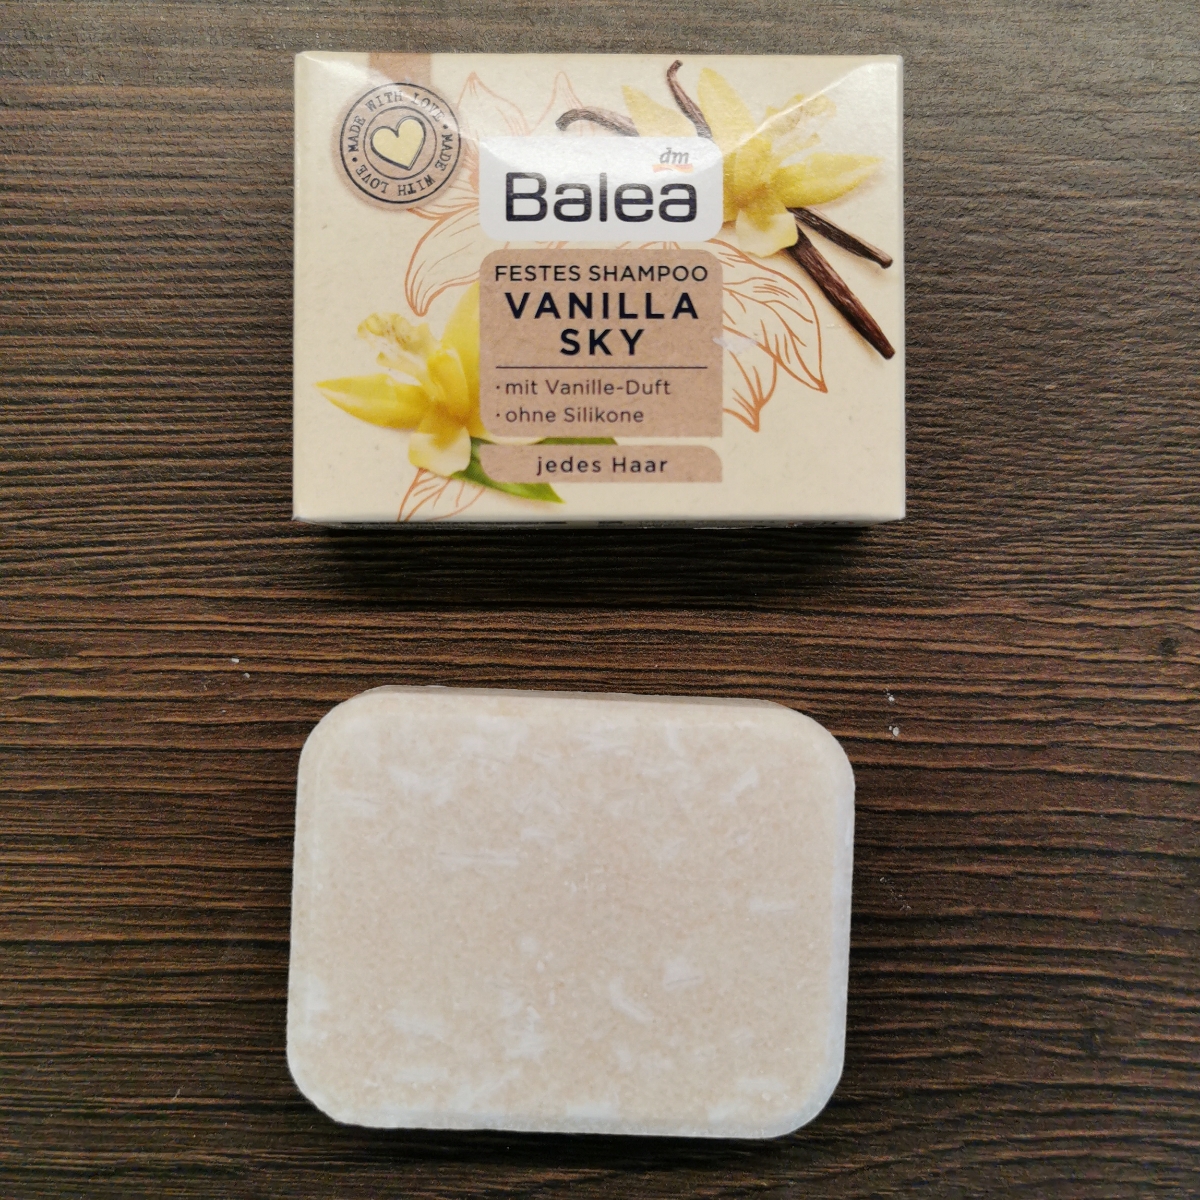 Balea Festes Shampoo Vanilla Sky Reviews | abillion